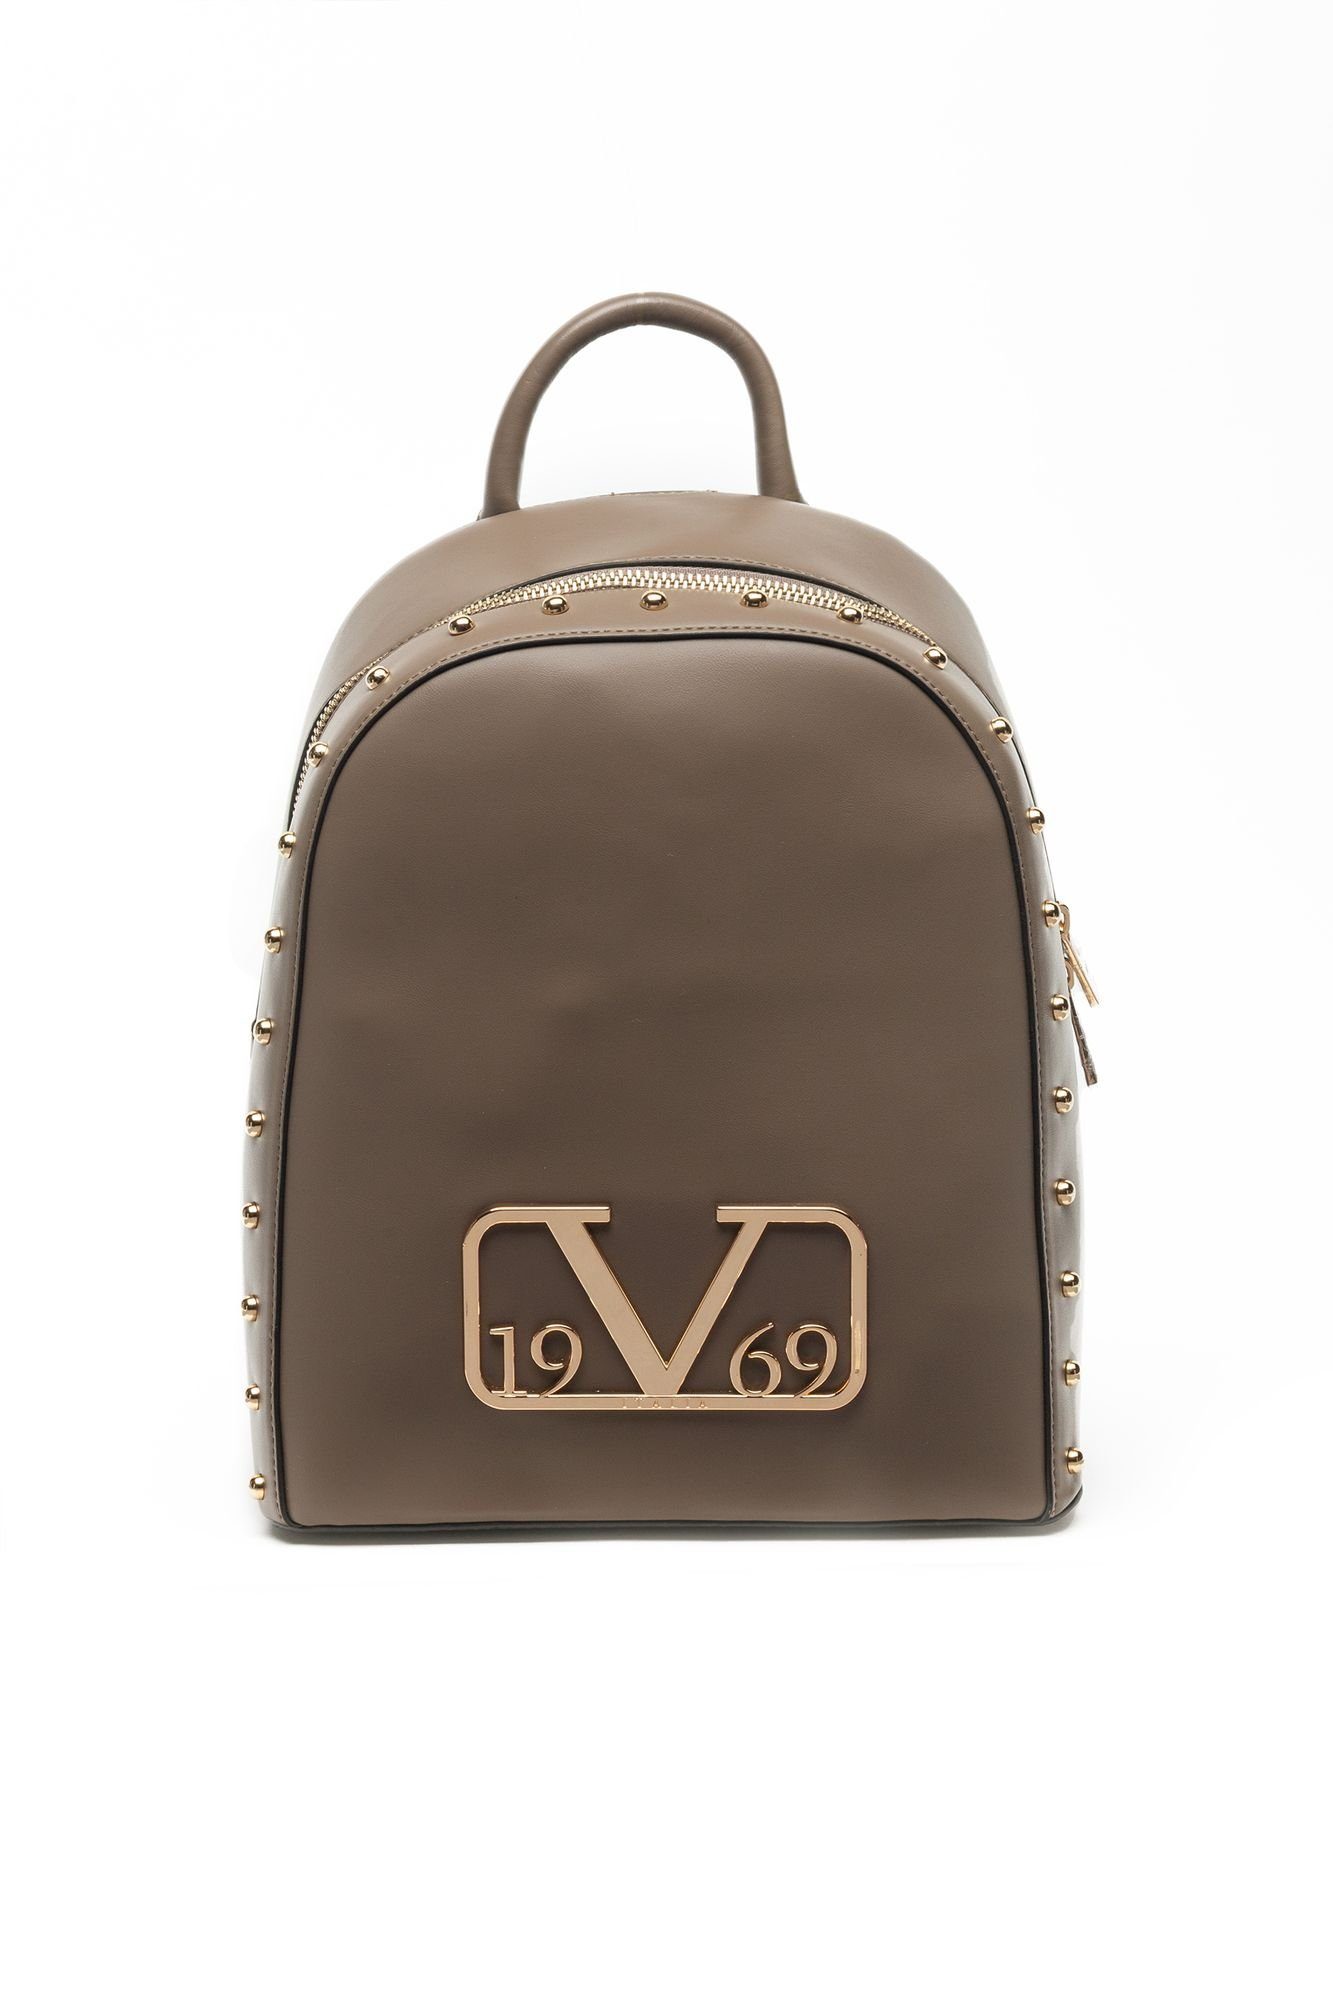 Versace V1969 Rucksack Handtasche Tasche Bag braun schwarz schwarz-grau NEU 